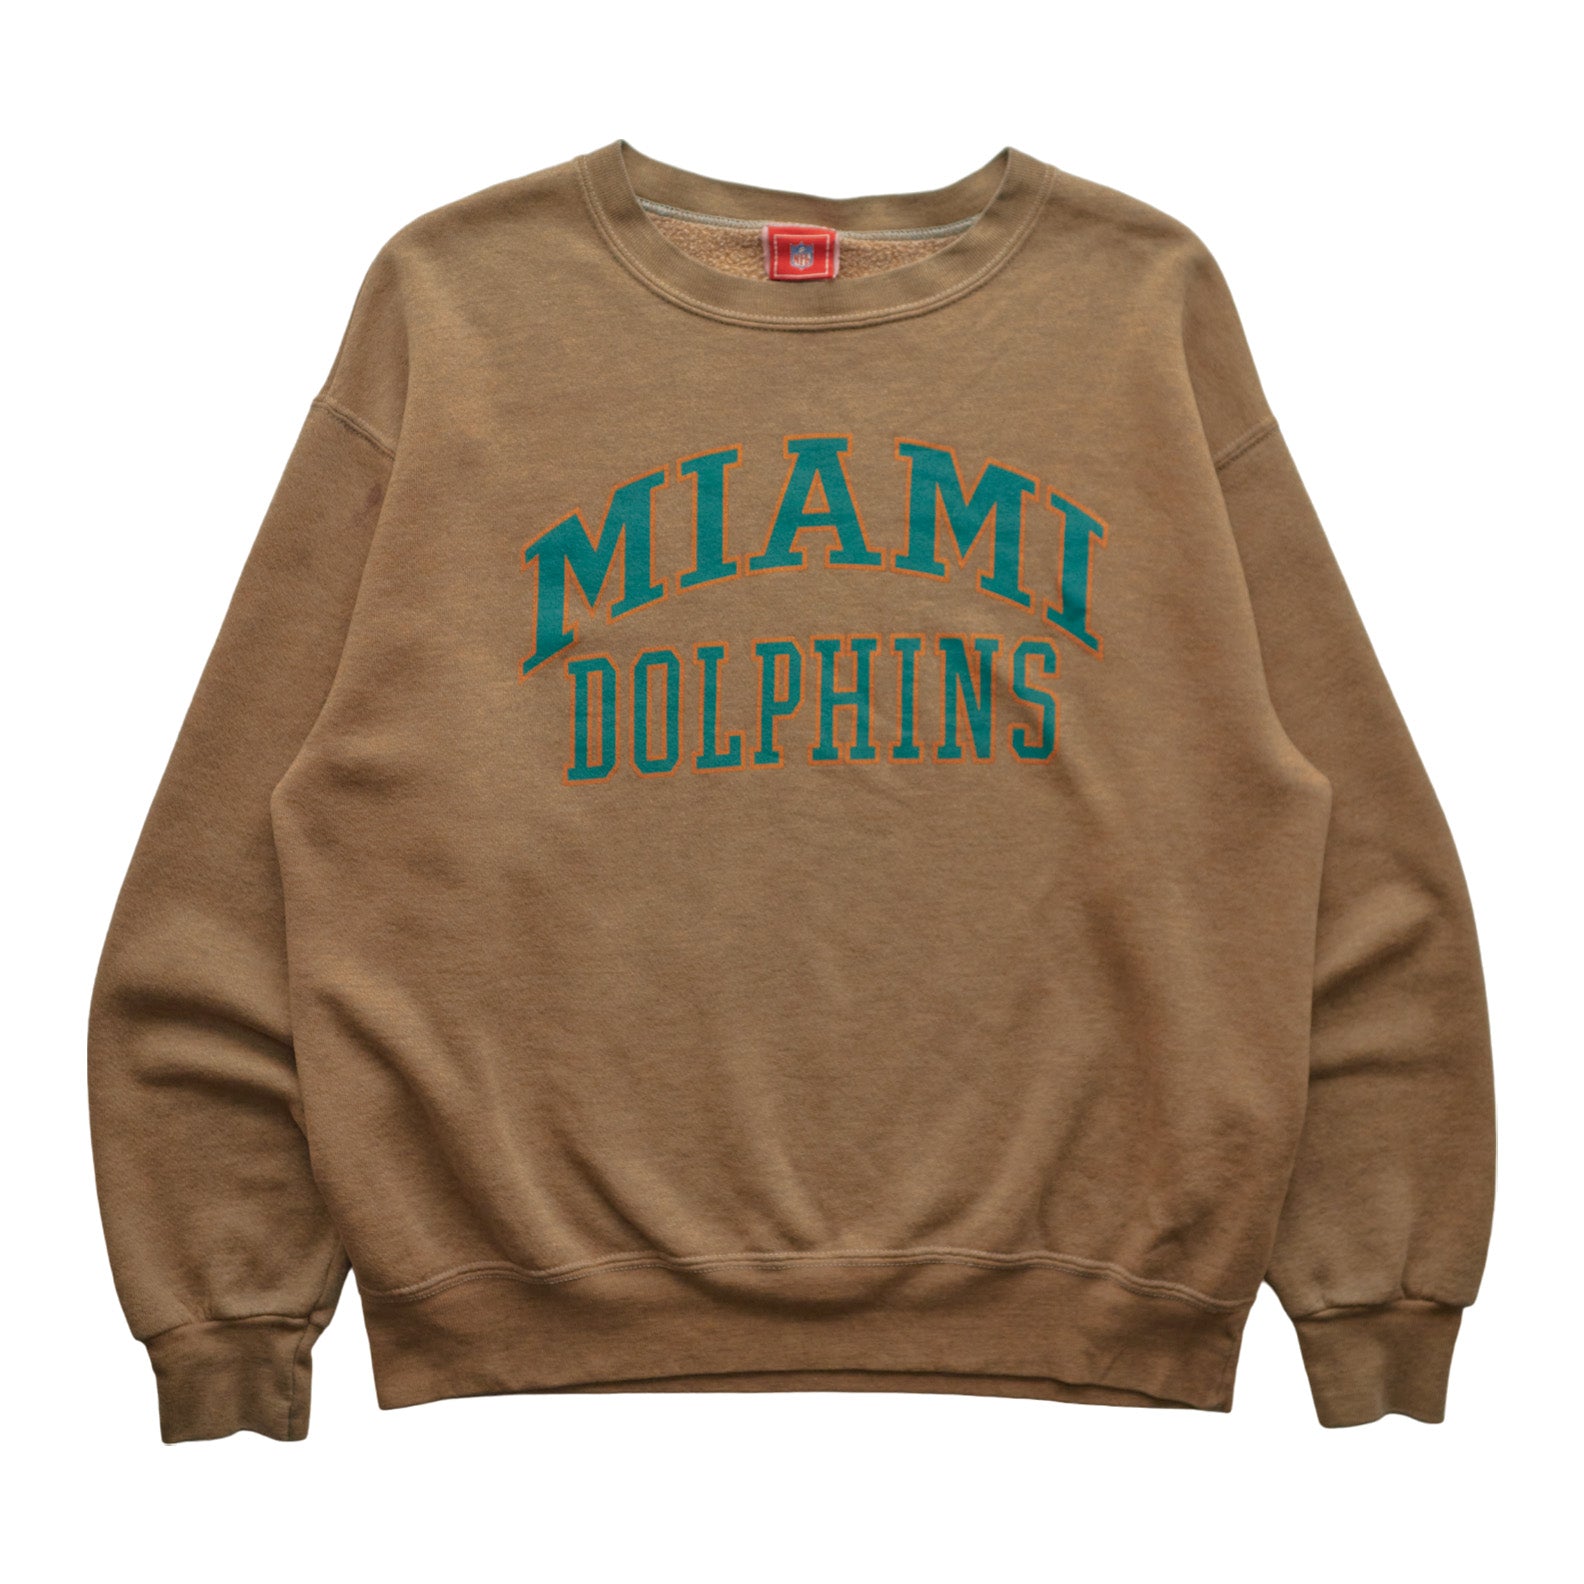 (L) 00s Miami Dolphins